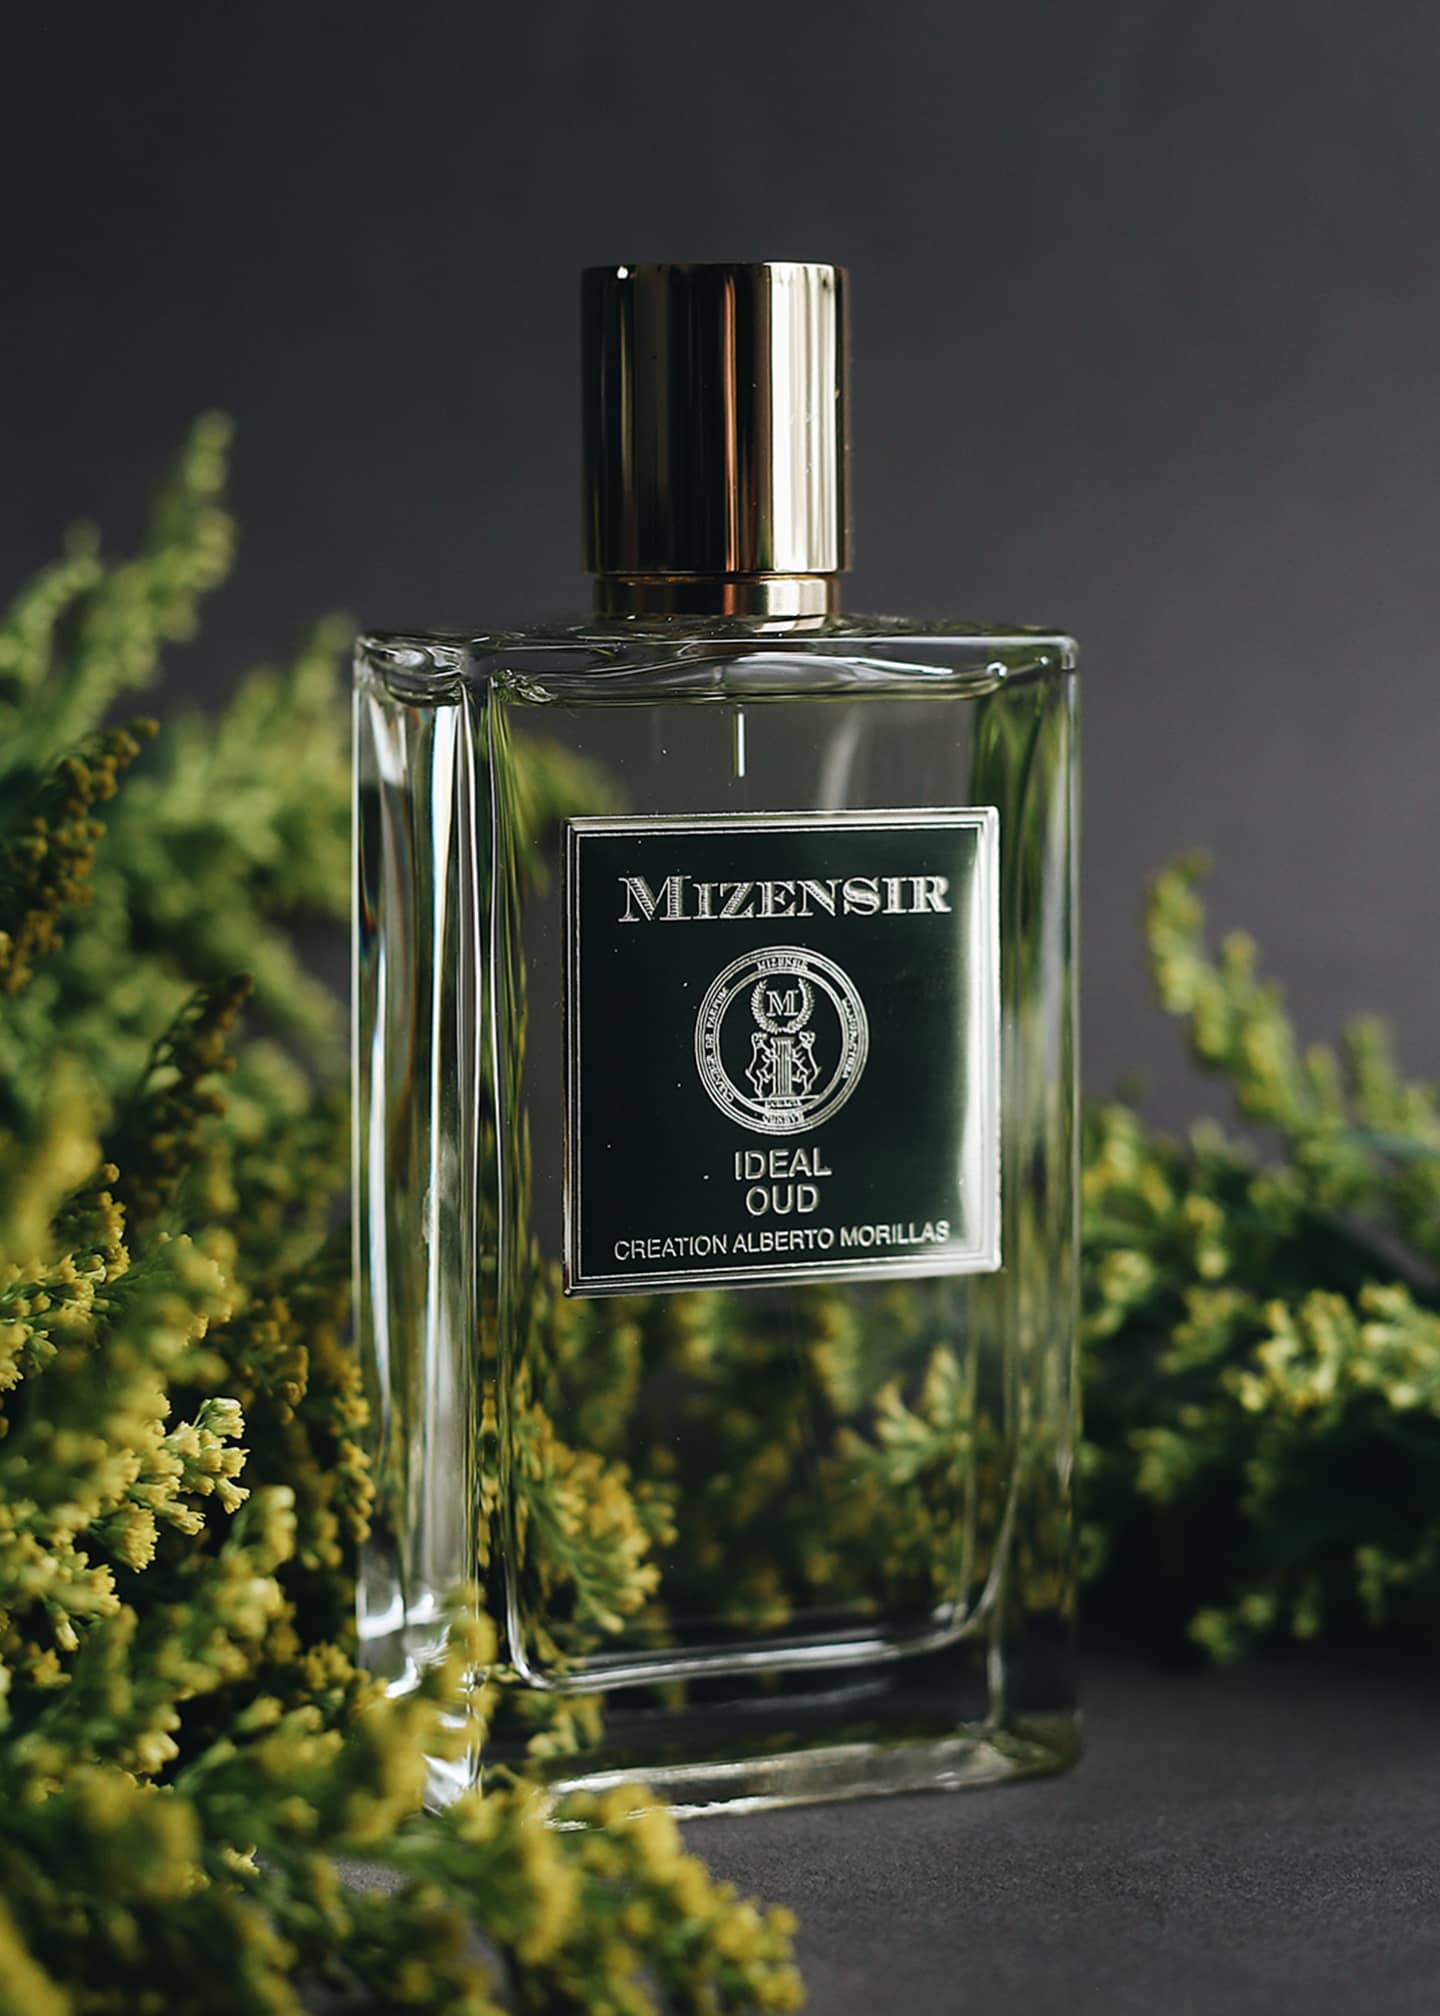 Mizensir 3.3 oz. Ideal Oud Eau de Parfum - Bergdorf Goodman